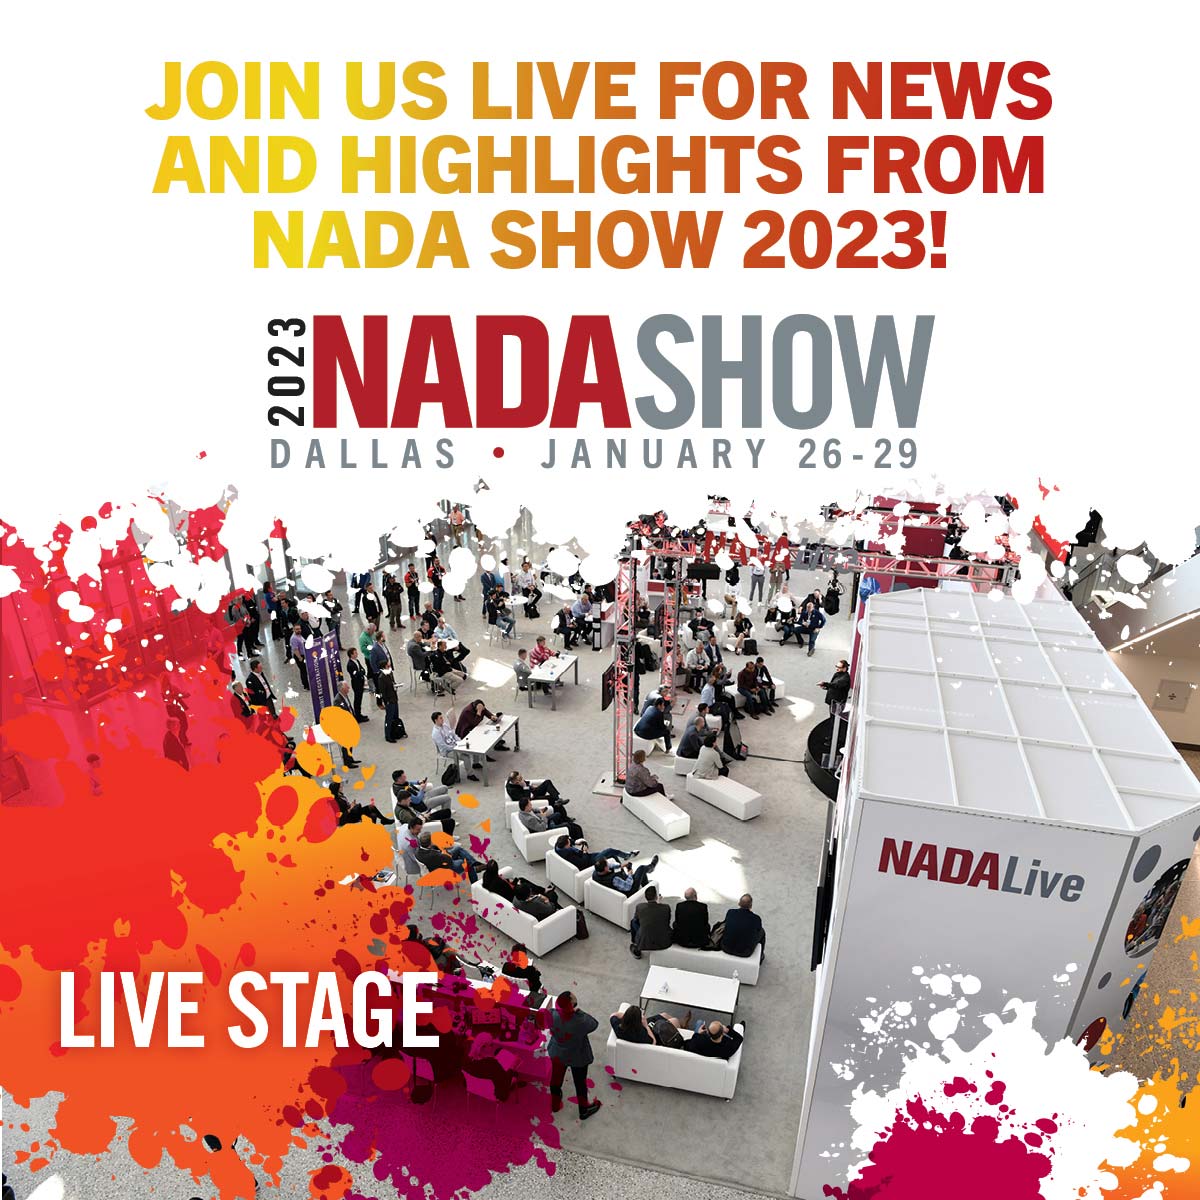 NADA Show 2023 Livestream